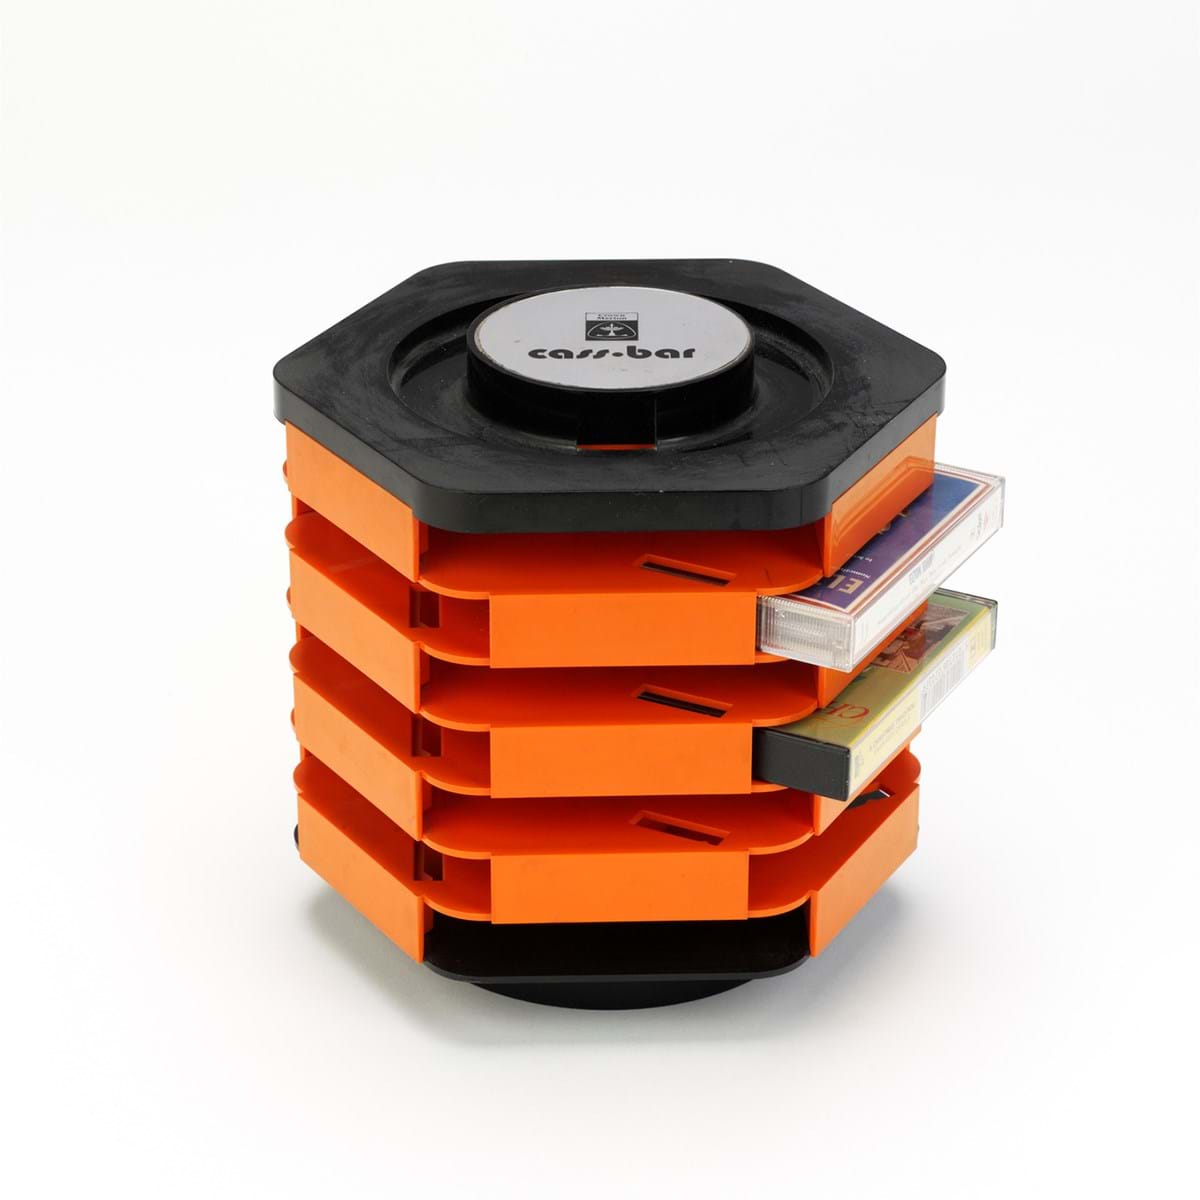 Black and orange plastic cassette holder